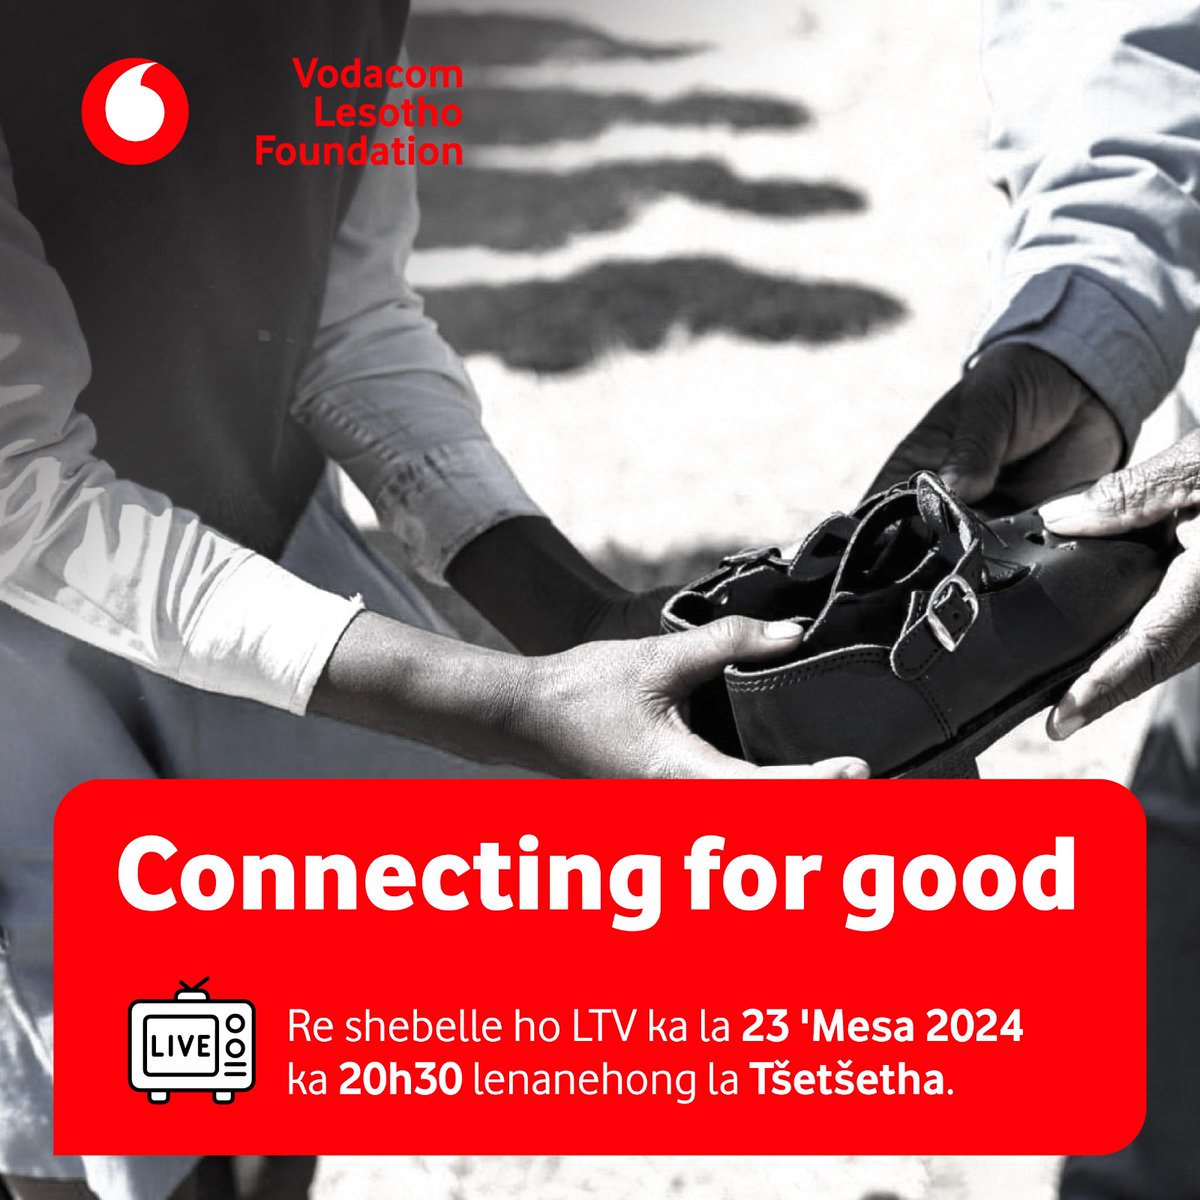 Shebella Lesotho Television kajeno (23 'Mesa 2024) mantsiboea ka 20h30 (Lenanehong la Tšetšetha) ha re tla be re qoqa ka merero ea Vodacom Lesotho ea khutlisetso sechabeng. #ConnectingForGood #LesothosBestNetwork